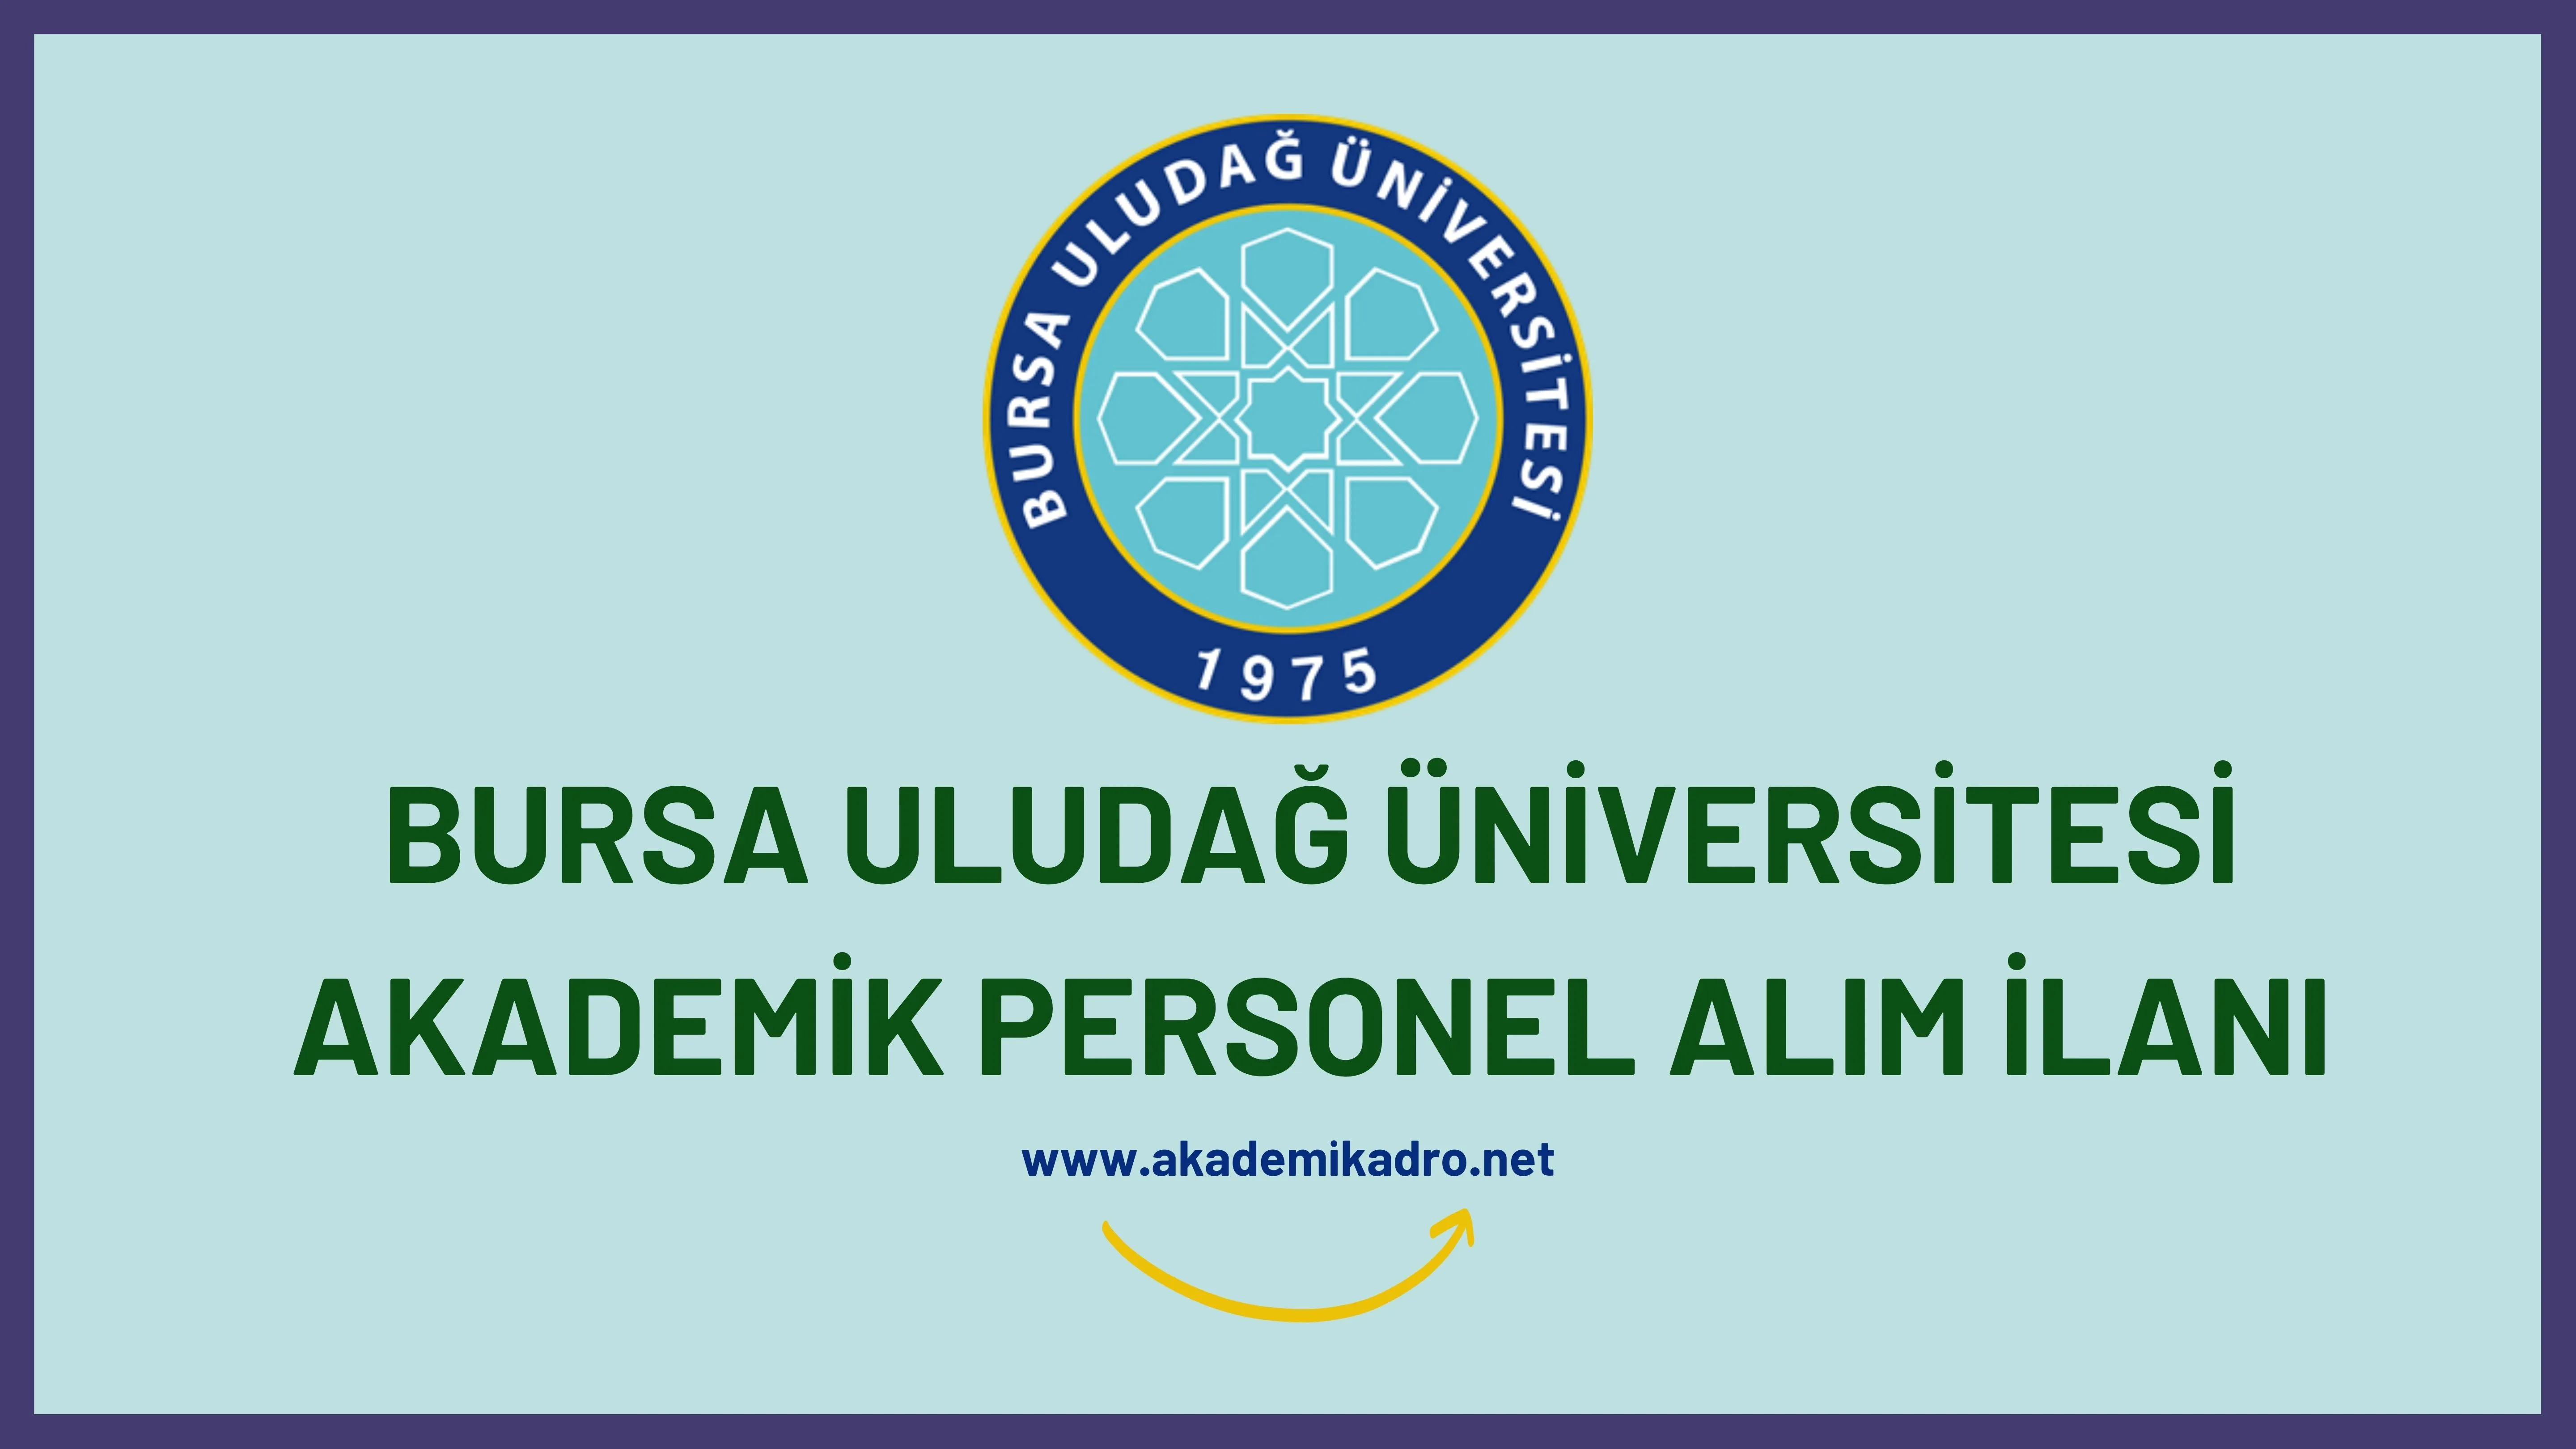 Bursa Uludağ Üniversitesi birçok alandan 30akademik personel alacak.